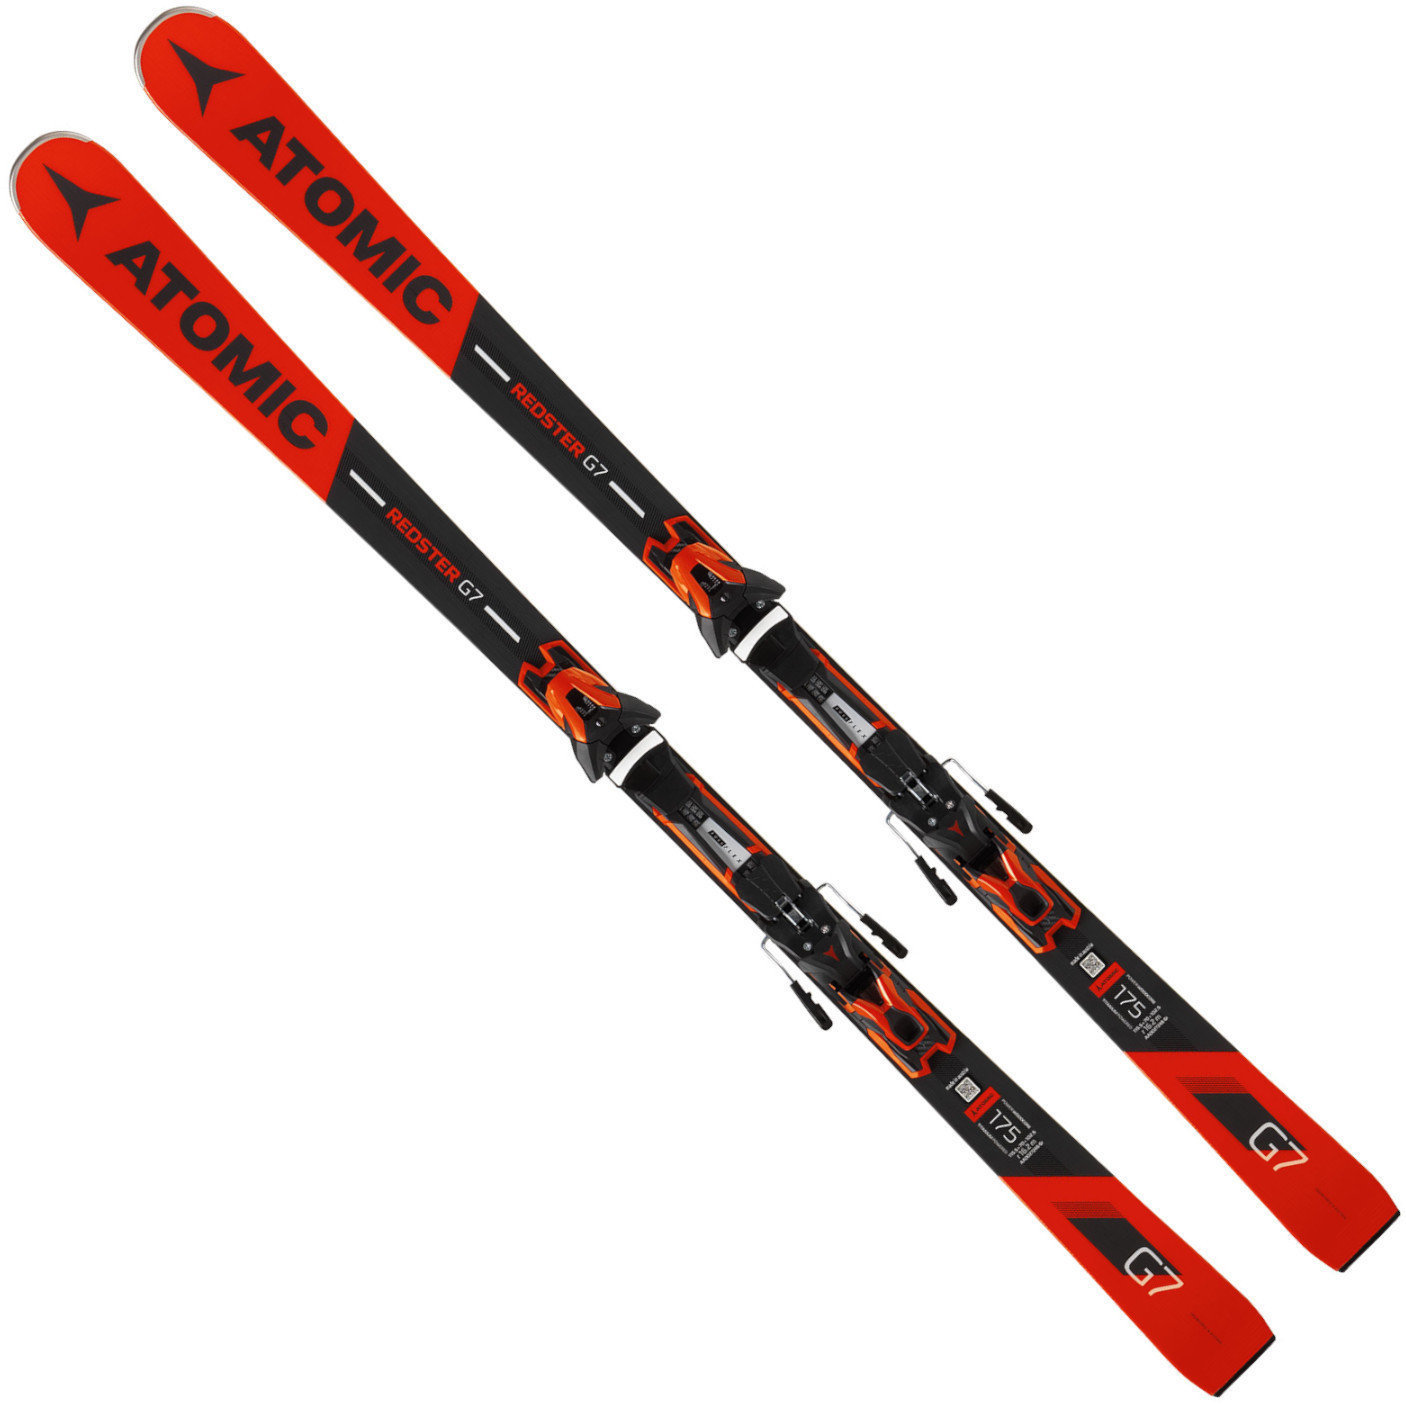 Skis Atomic Redster G7 + FT 12 GW 175 18/19 skis